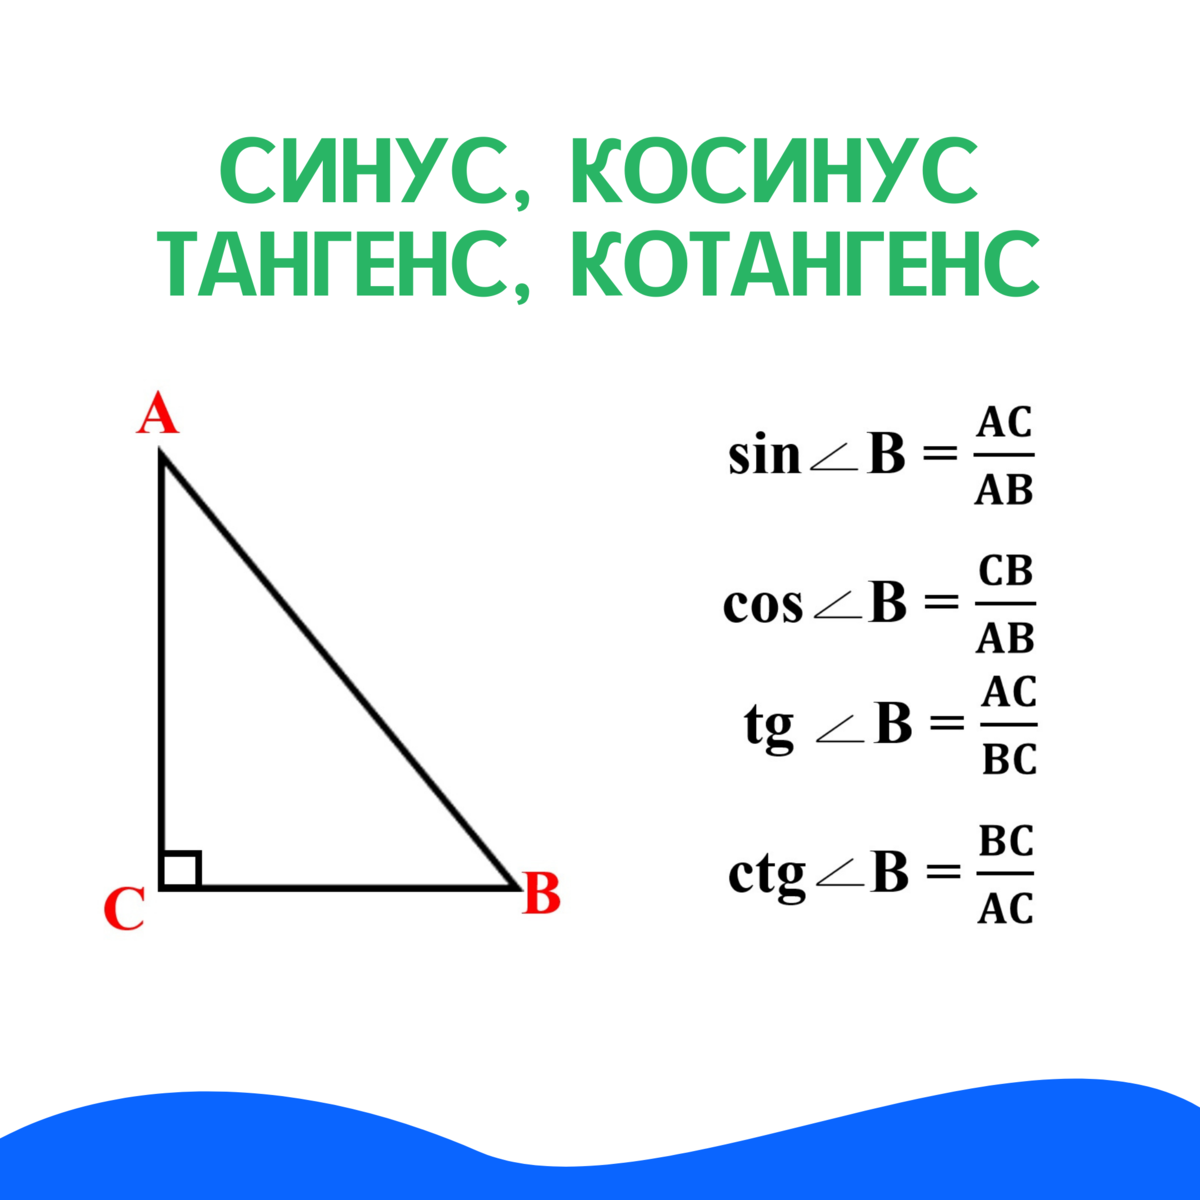 Котангенс угла c. Геометрия синус косинус тангенс. Синусфы косинуся тангне. Синус косинус тангенс котангенс. Синус тангенс котангенс в прямоугольном треугольнике.